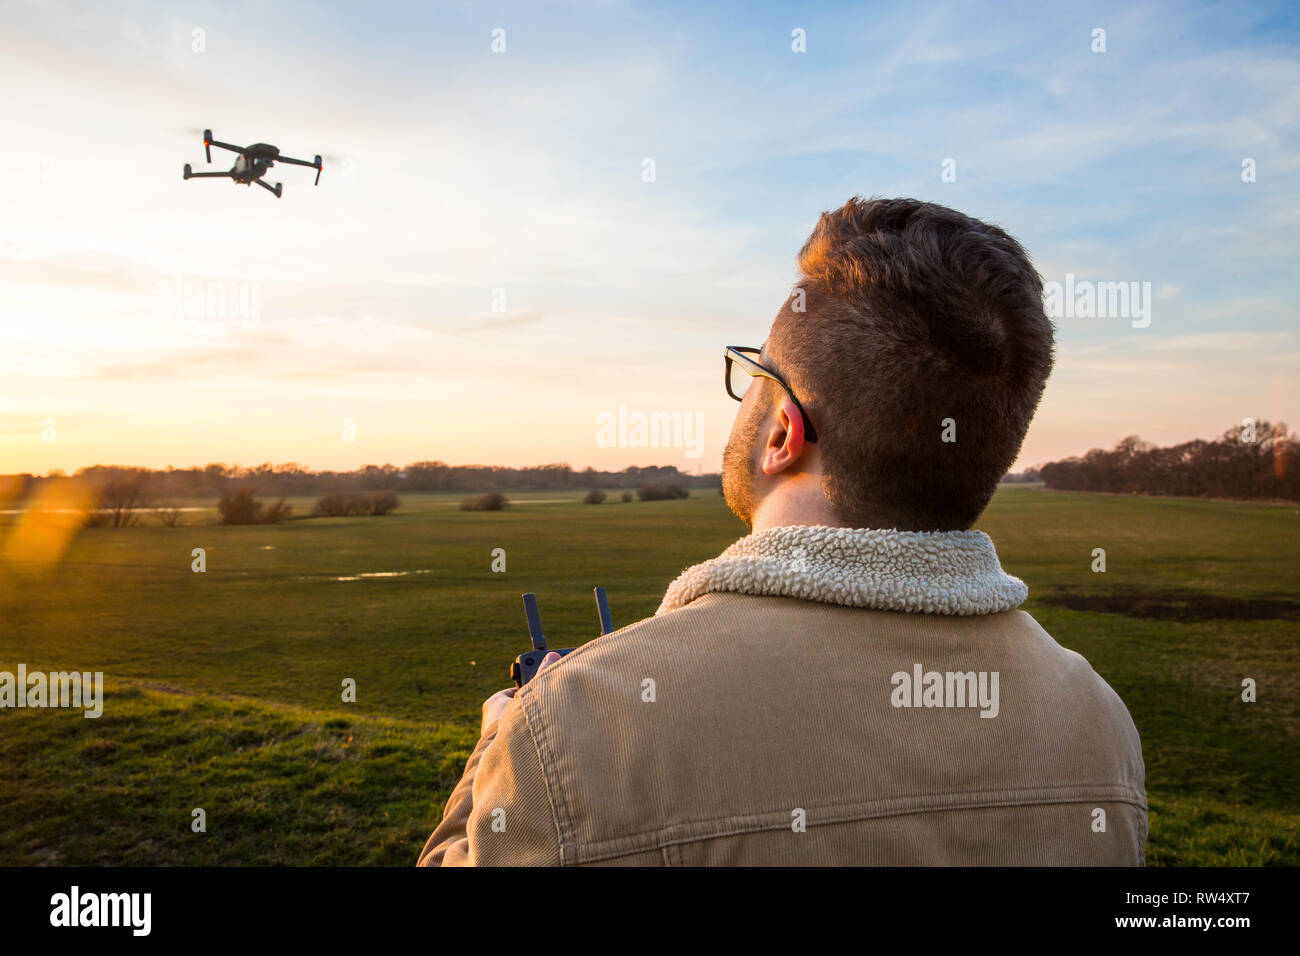 Ein über die Schulter geschossen von einem männlichen drone Pilot schweben und fliegen sein Drone auf eine sichere und verantwortungsvolle Art und Weise während draußen bei Sonnenuntergang Stockfoto